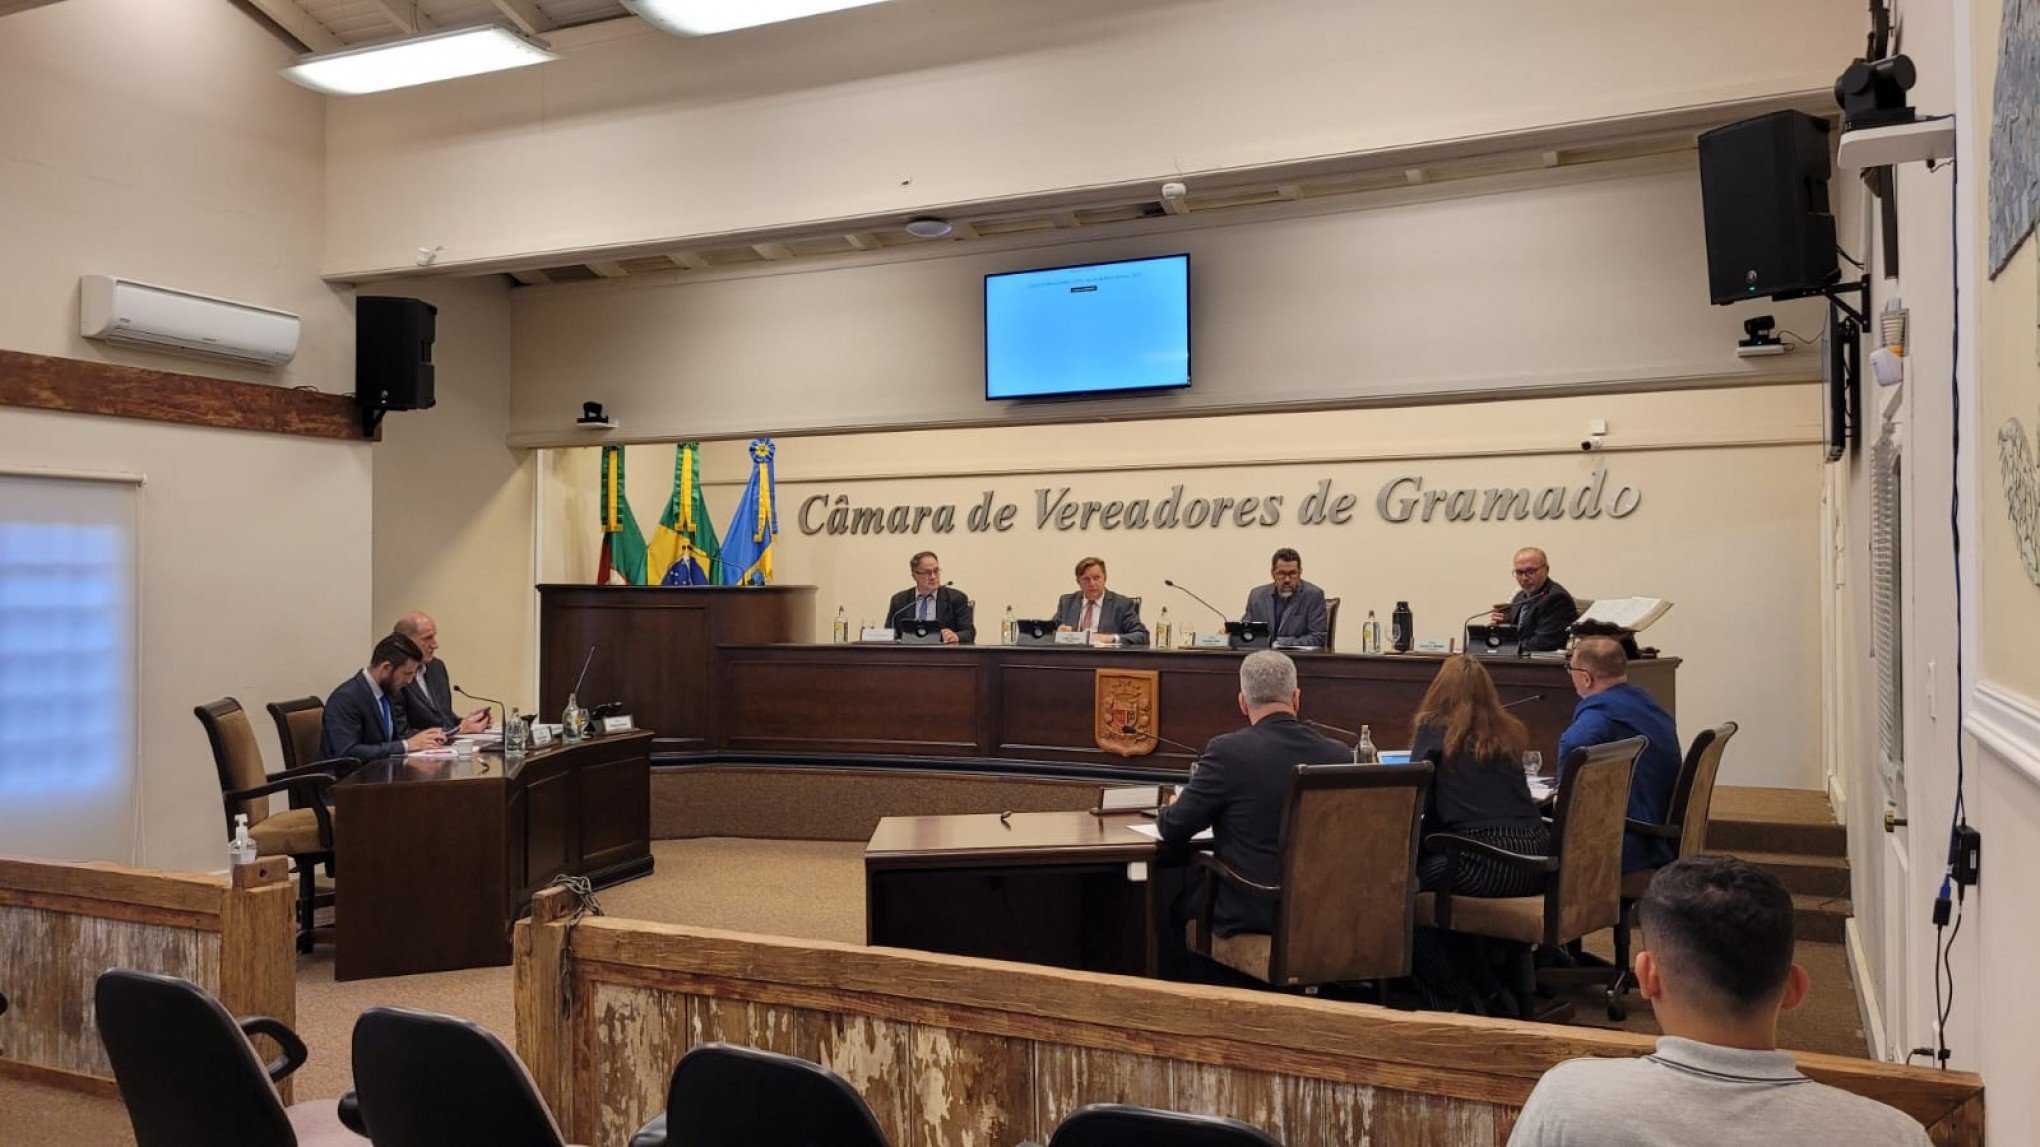 Vereadores aprovam projeto que institui política de transparência das escolas públicas de Gramado